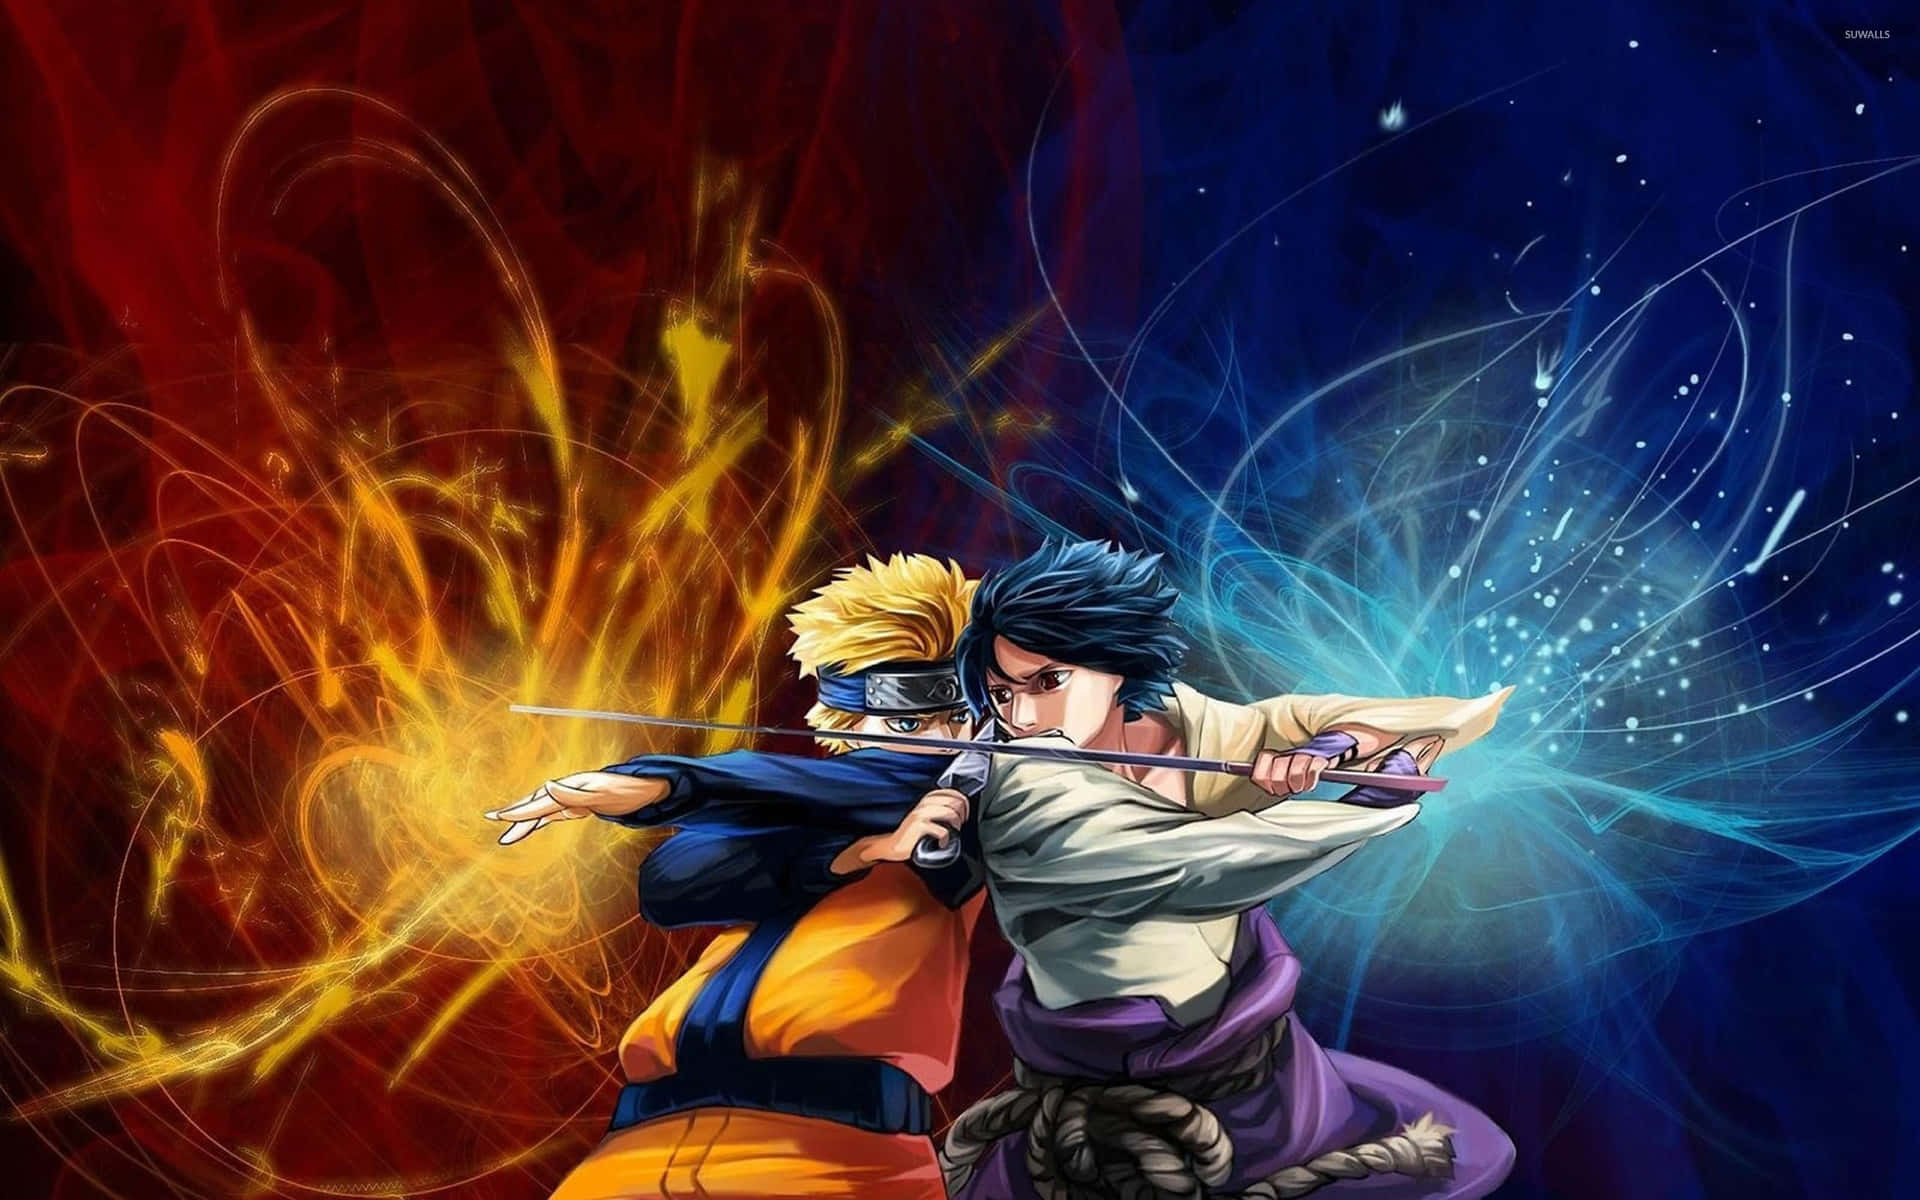 Nyd en intens kamp som Naruto i den spændende verden af Naruto Neon. Wallpaper